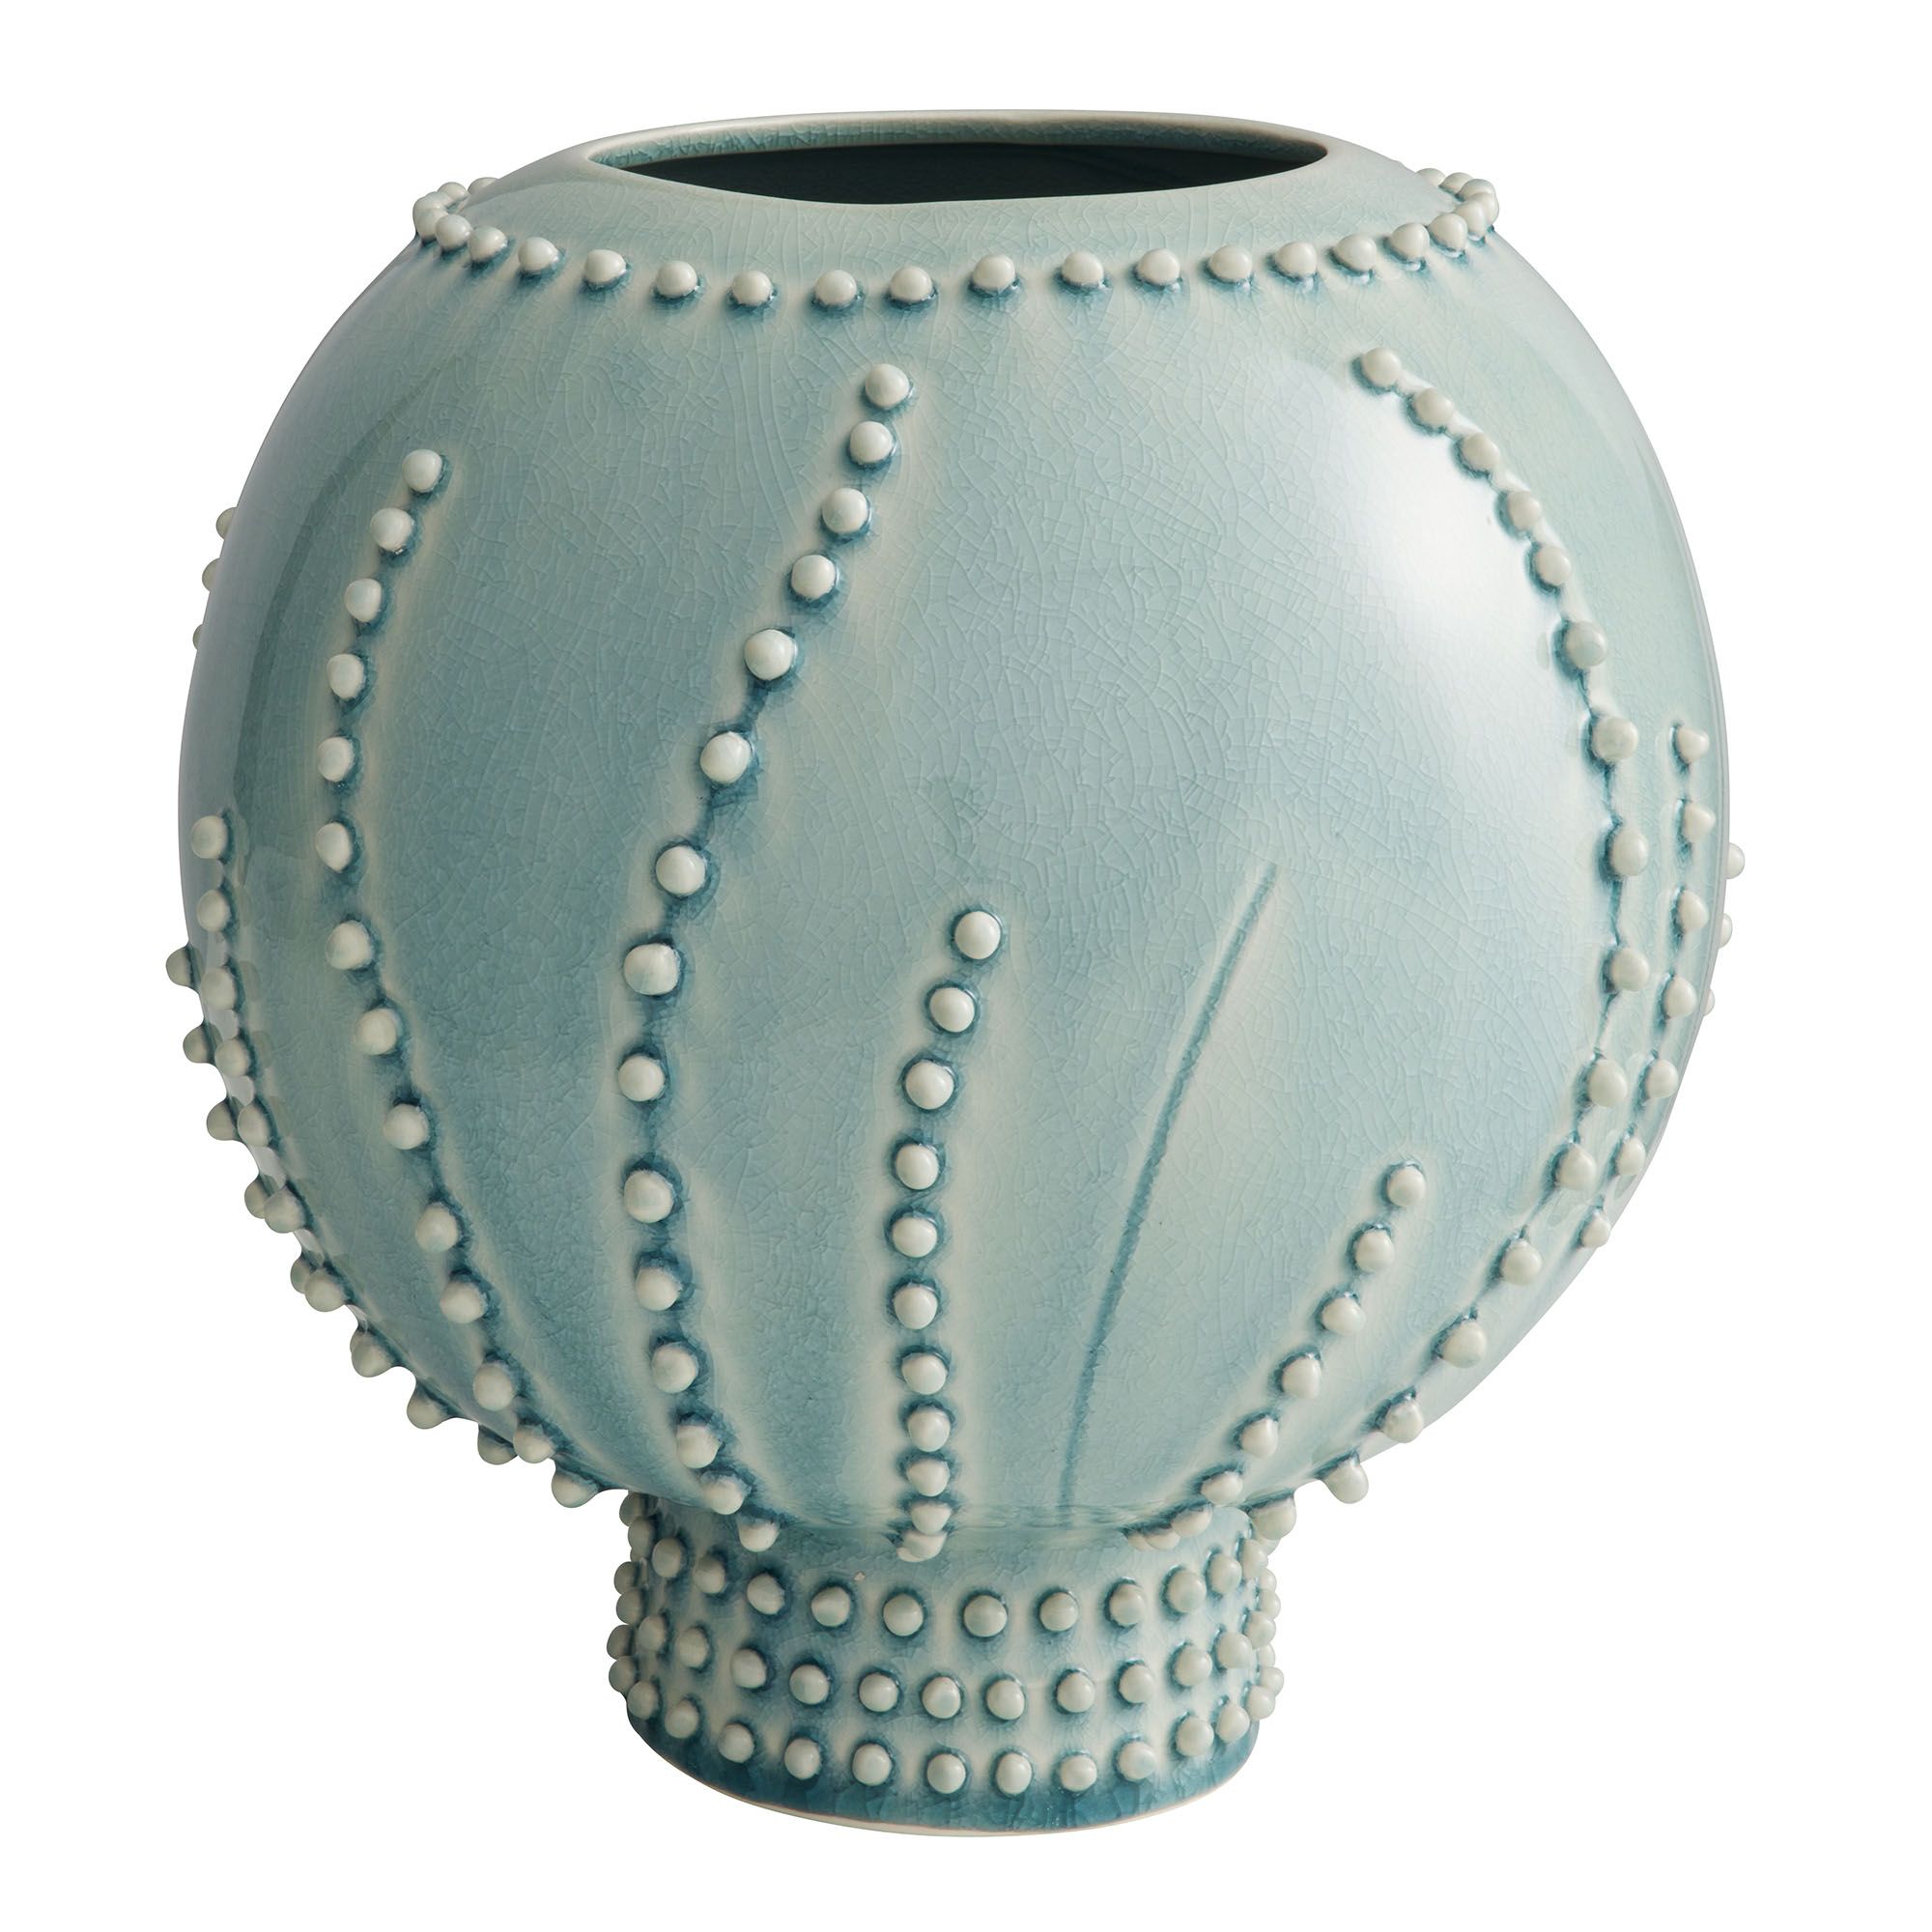 Купить Ваза Spitzy Large Vase в интернет-магазине roooms.ru